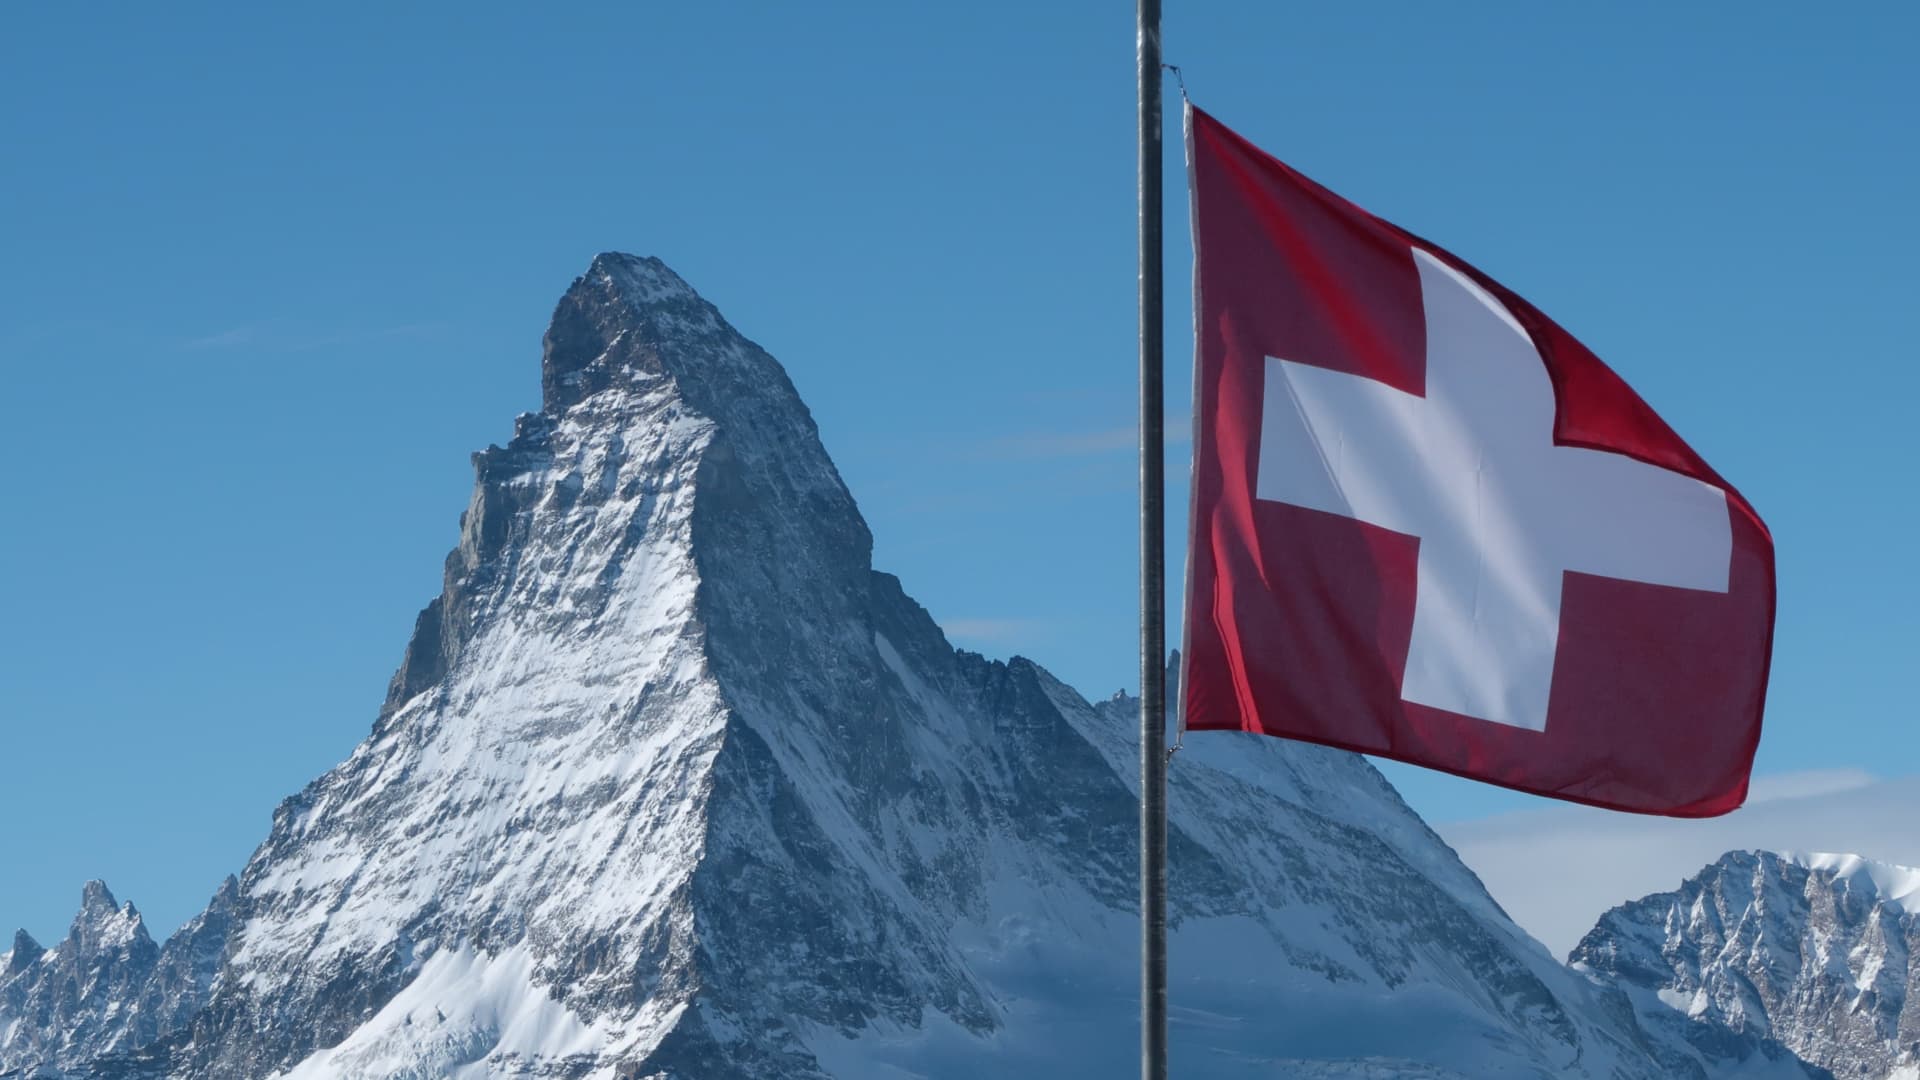 A Swiss flag flies near Matterhorn mountain on January 7, 2022 near Zermatt, Switzerland.